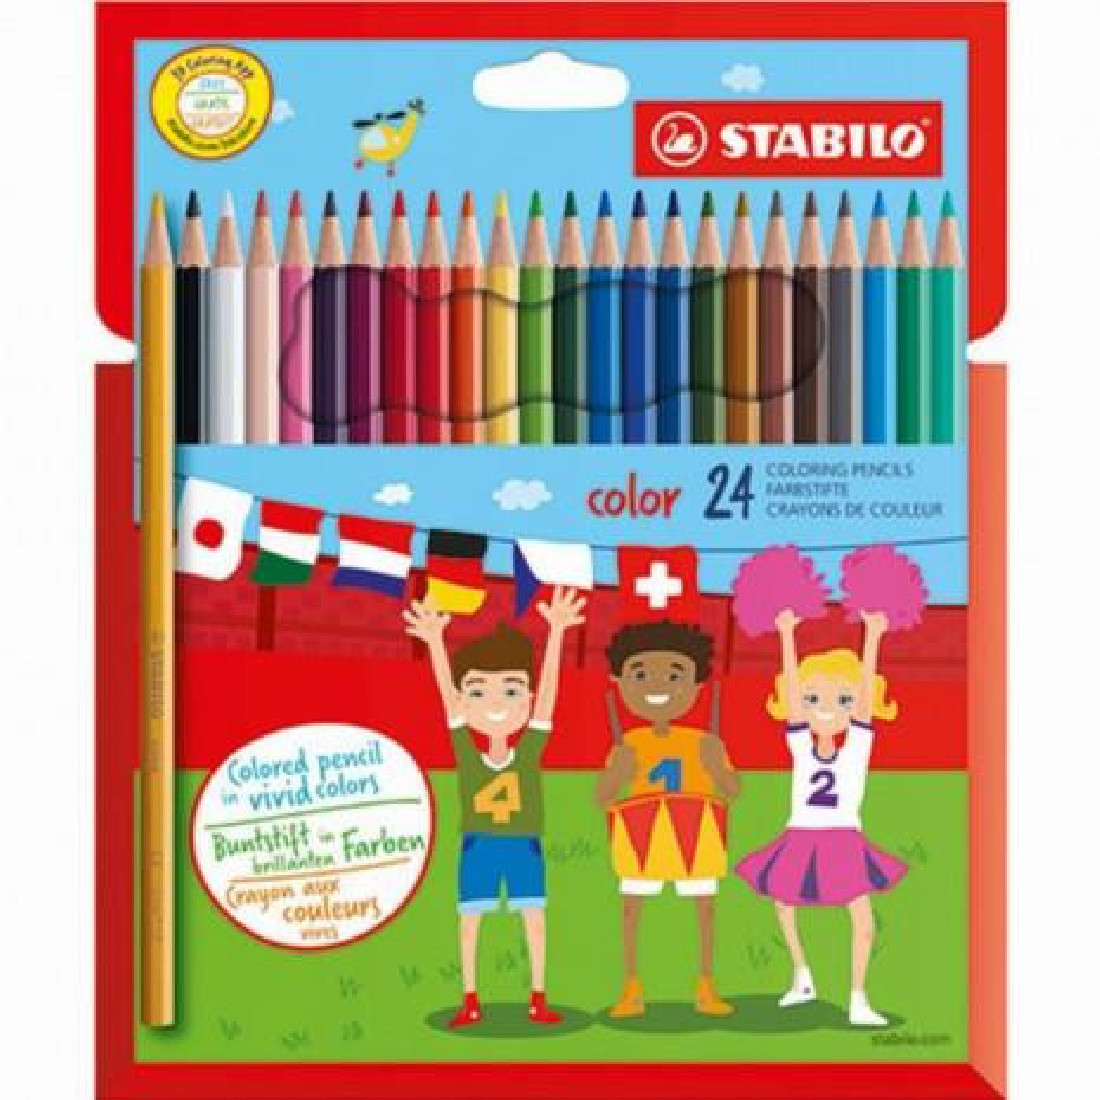 Coloring pencils color 24 1924/77 Stabilo